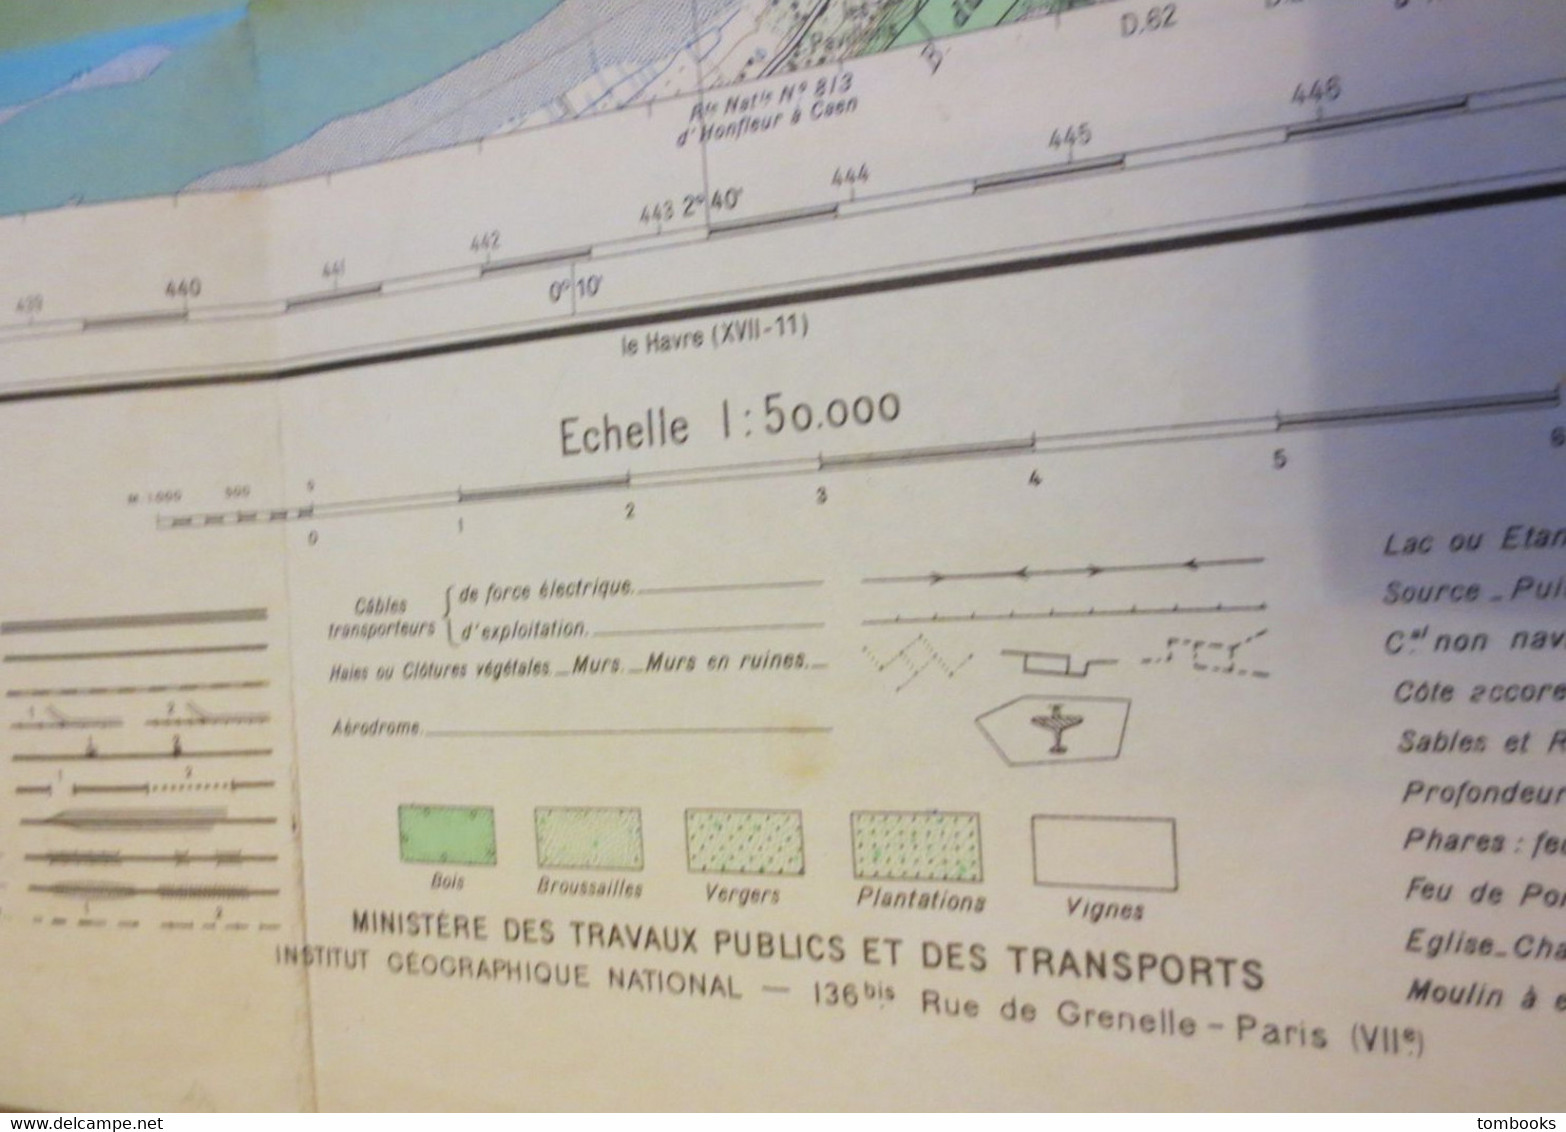 Le Havre - Plan Dépliant Et Environs Du Havre - Projection Lambert - 1957 - B.E - - Autres Plans